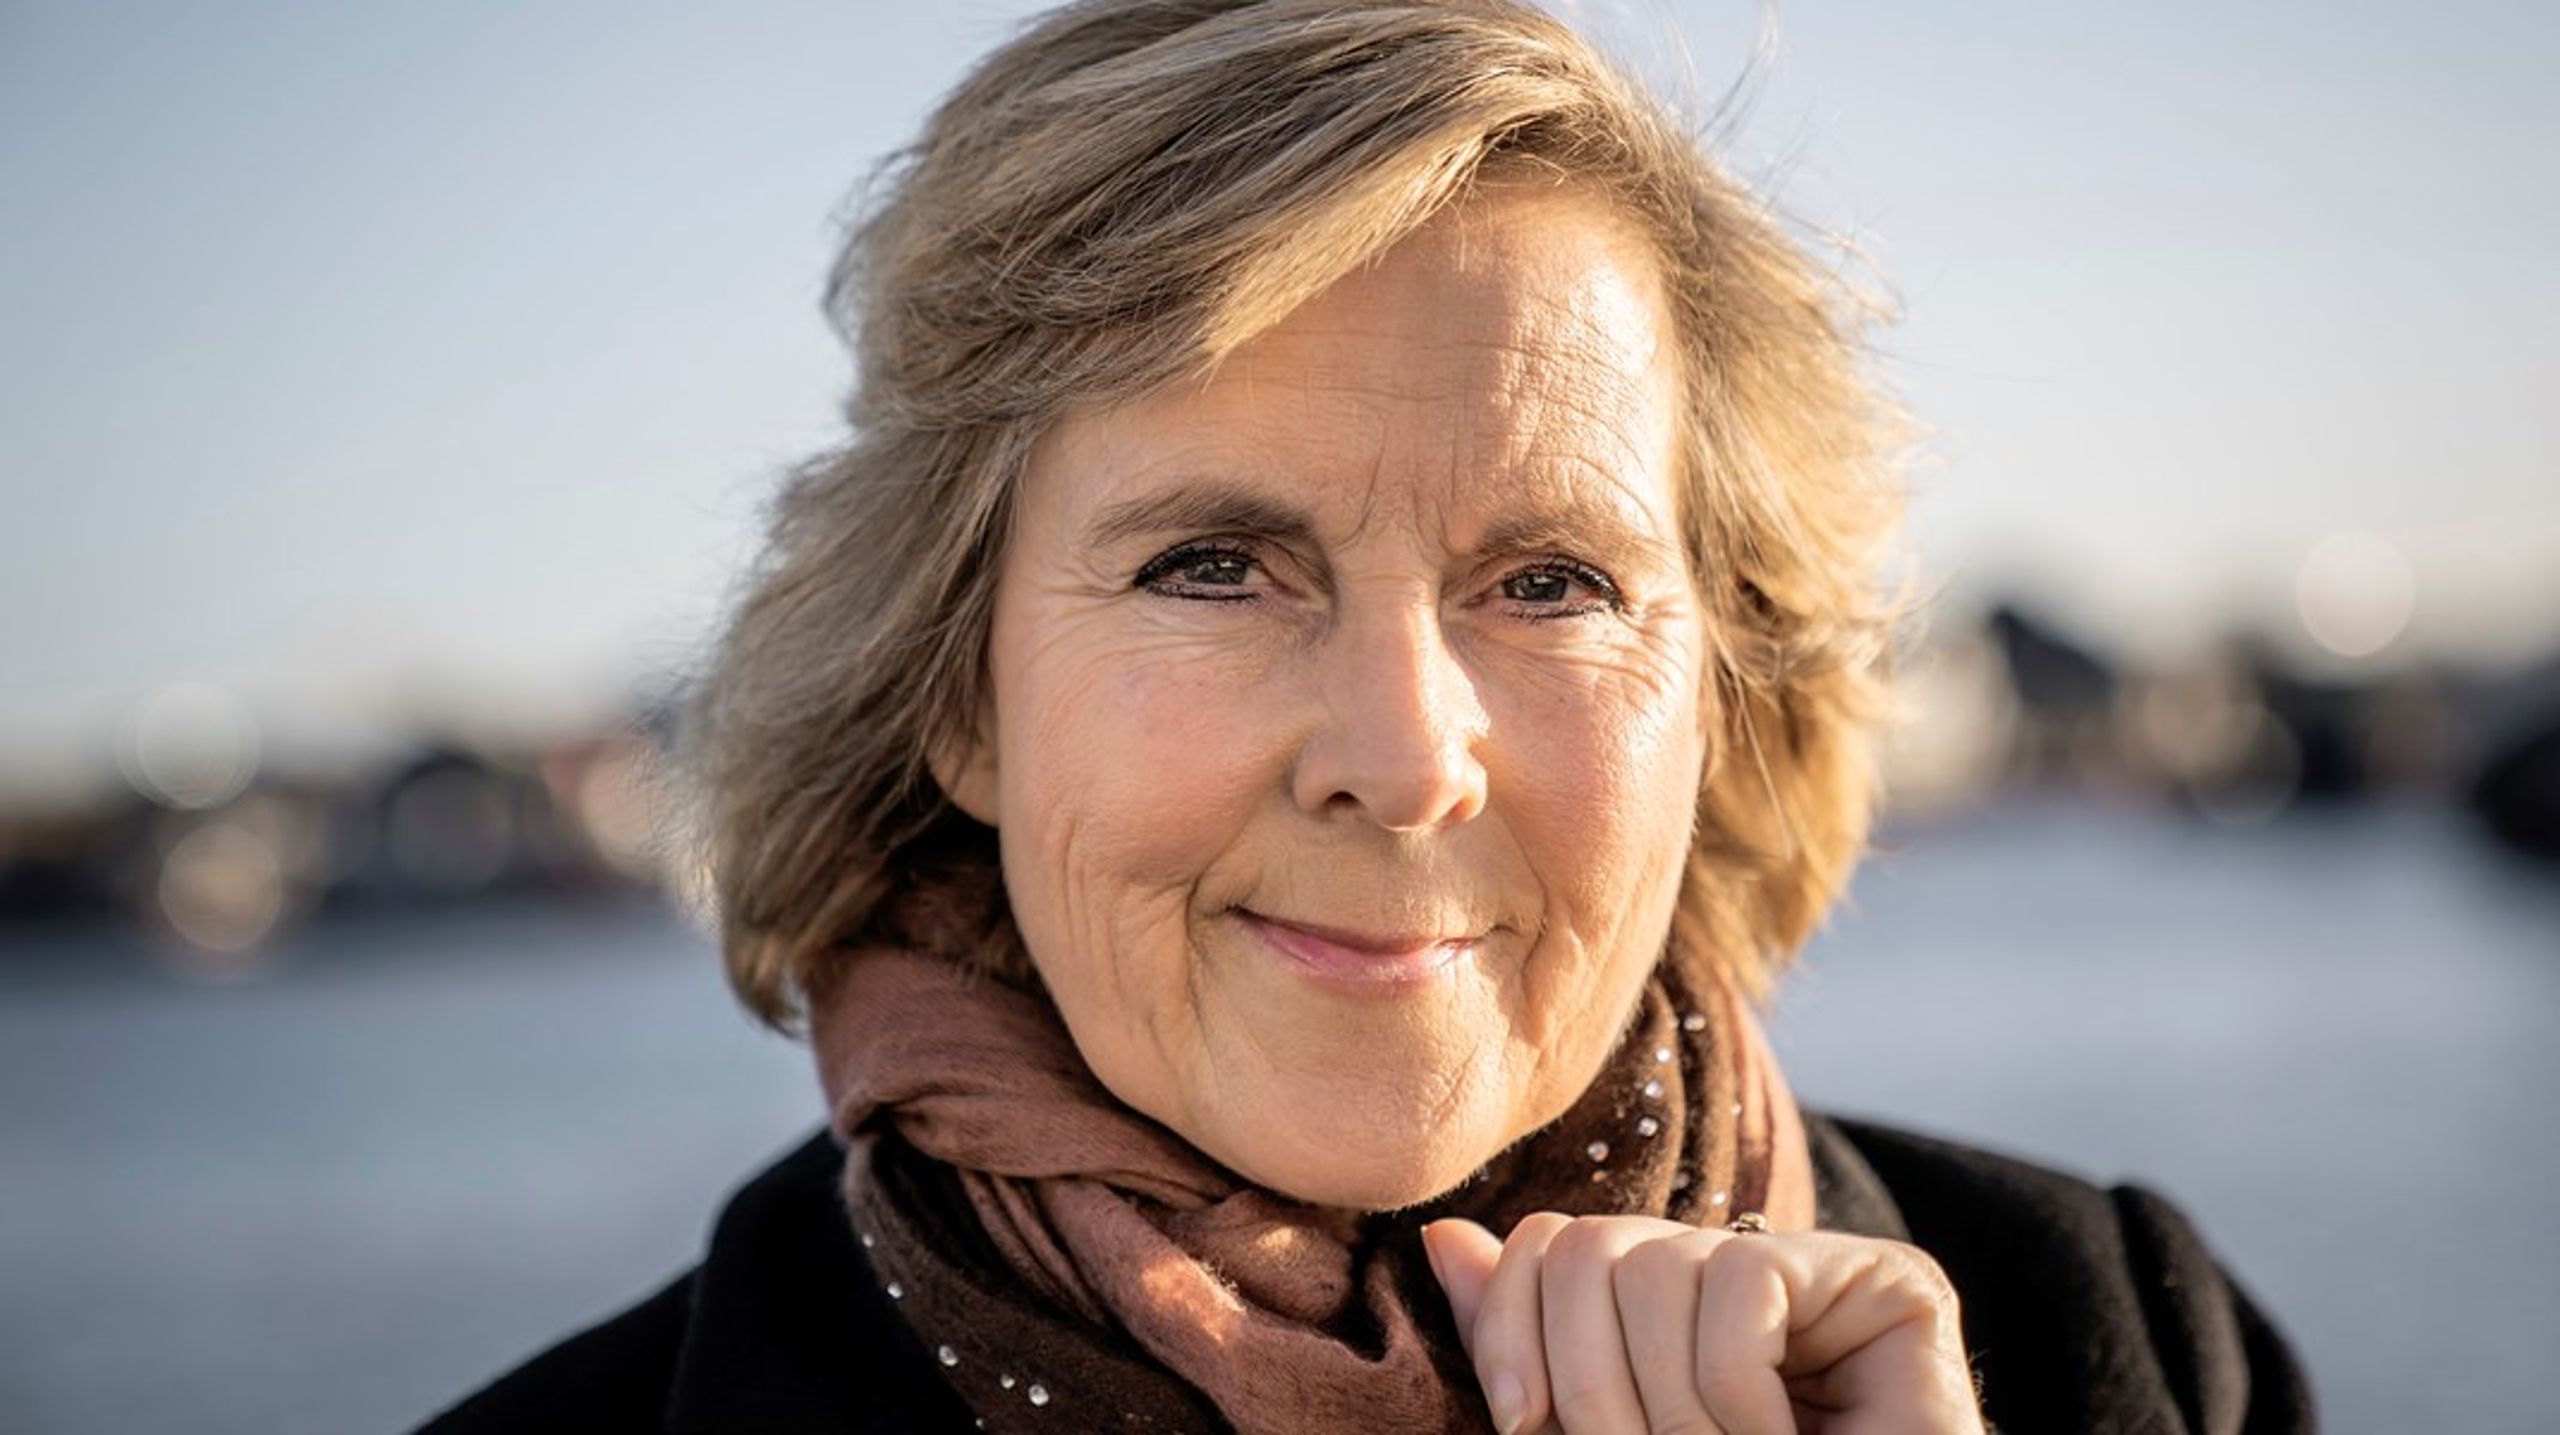 Det bedste argument for og imod grøn omstilling er arbejdspladser. Derfor er det så vigtigt, skriver Connie Hedegaard.